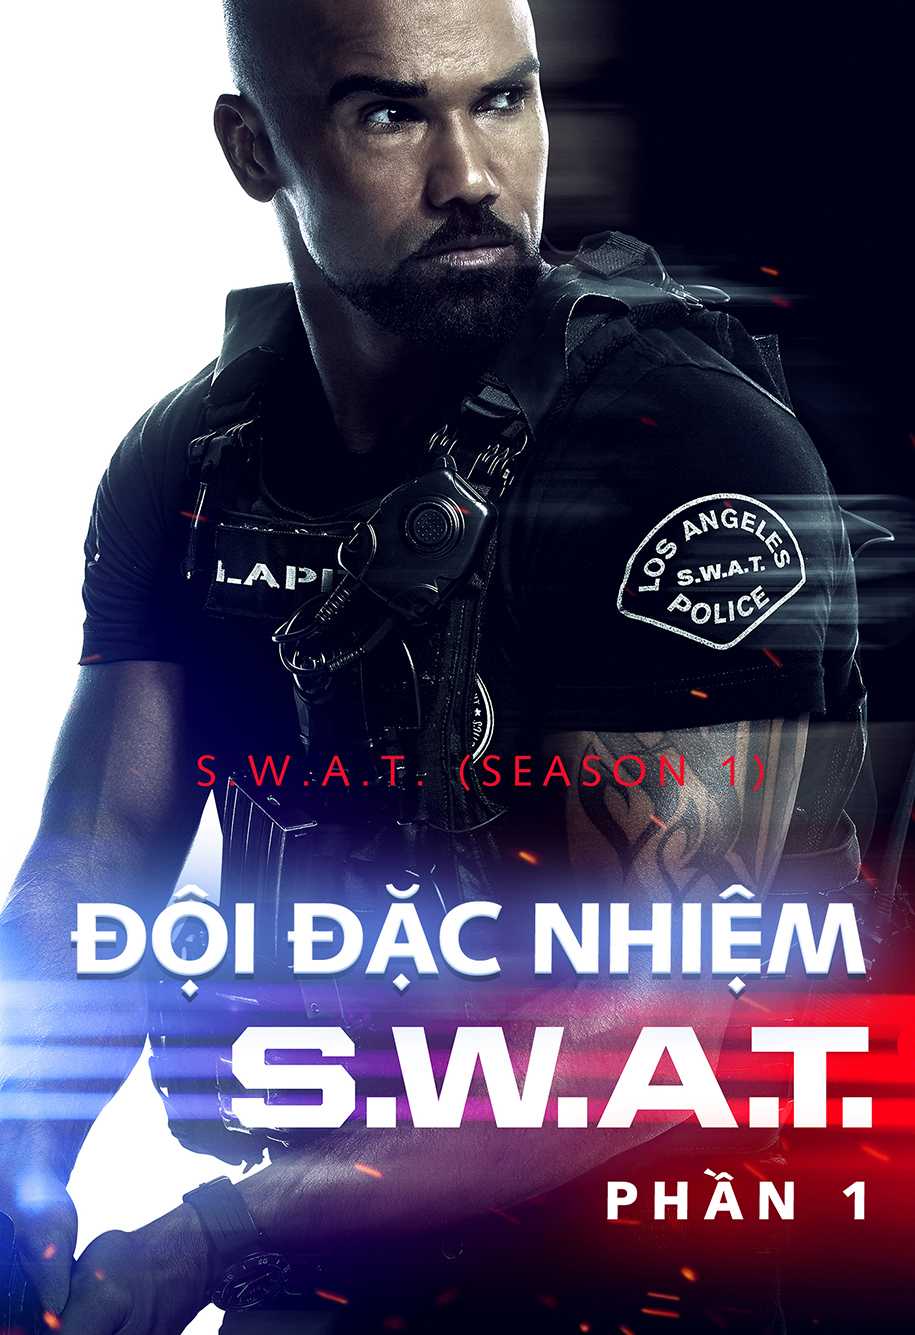 Đội đặc nhiệm swat (phần 1) - S.w.a.t. (season 1)